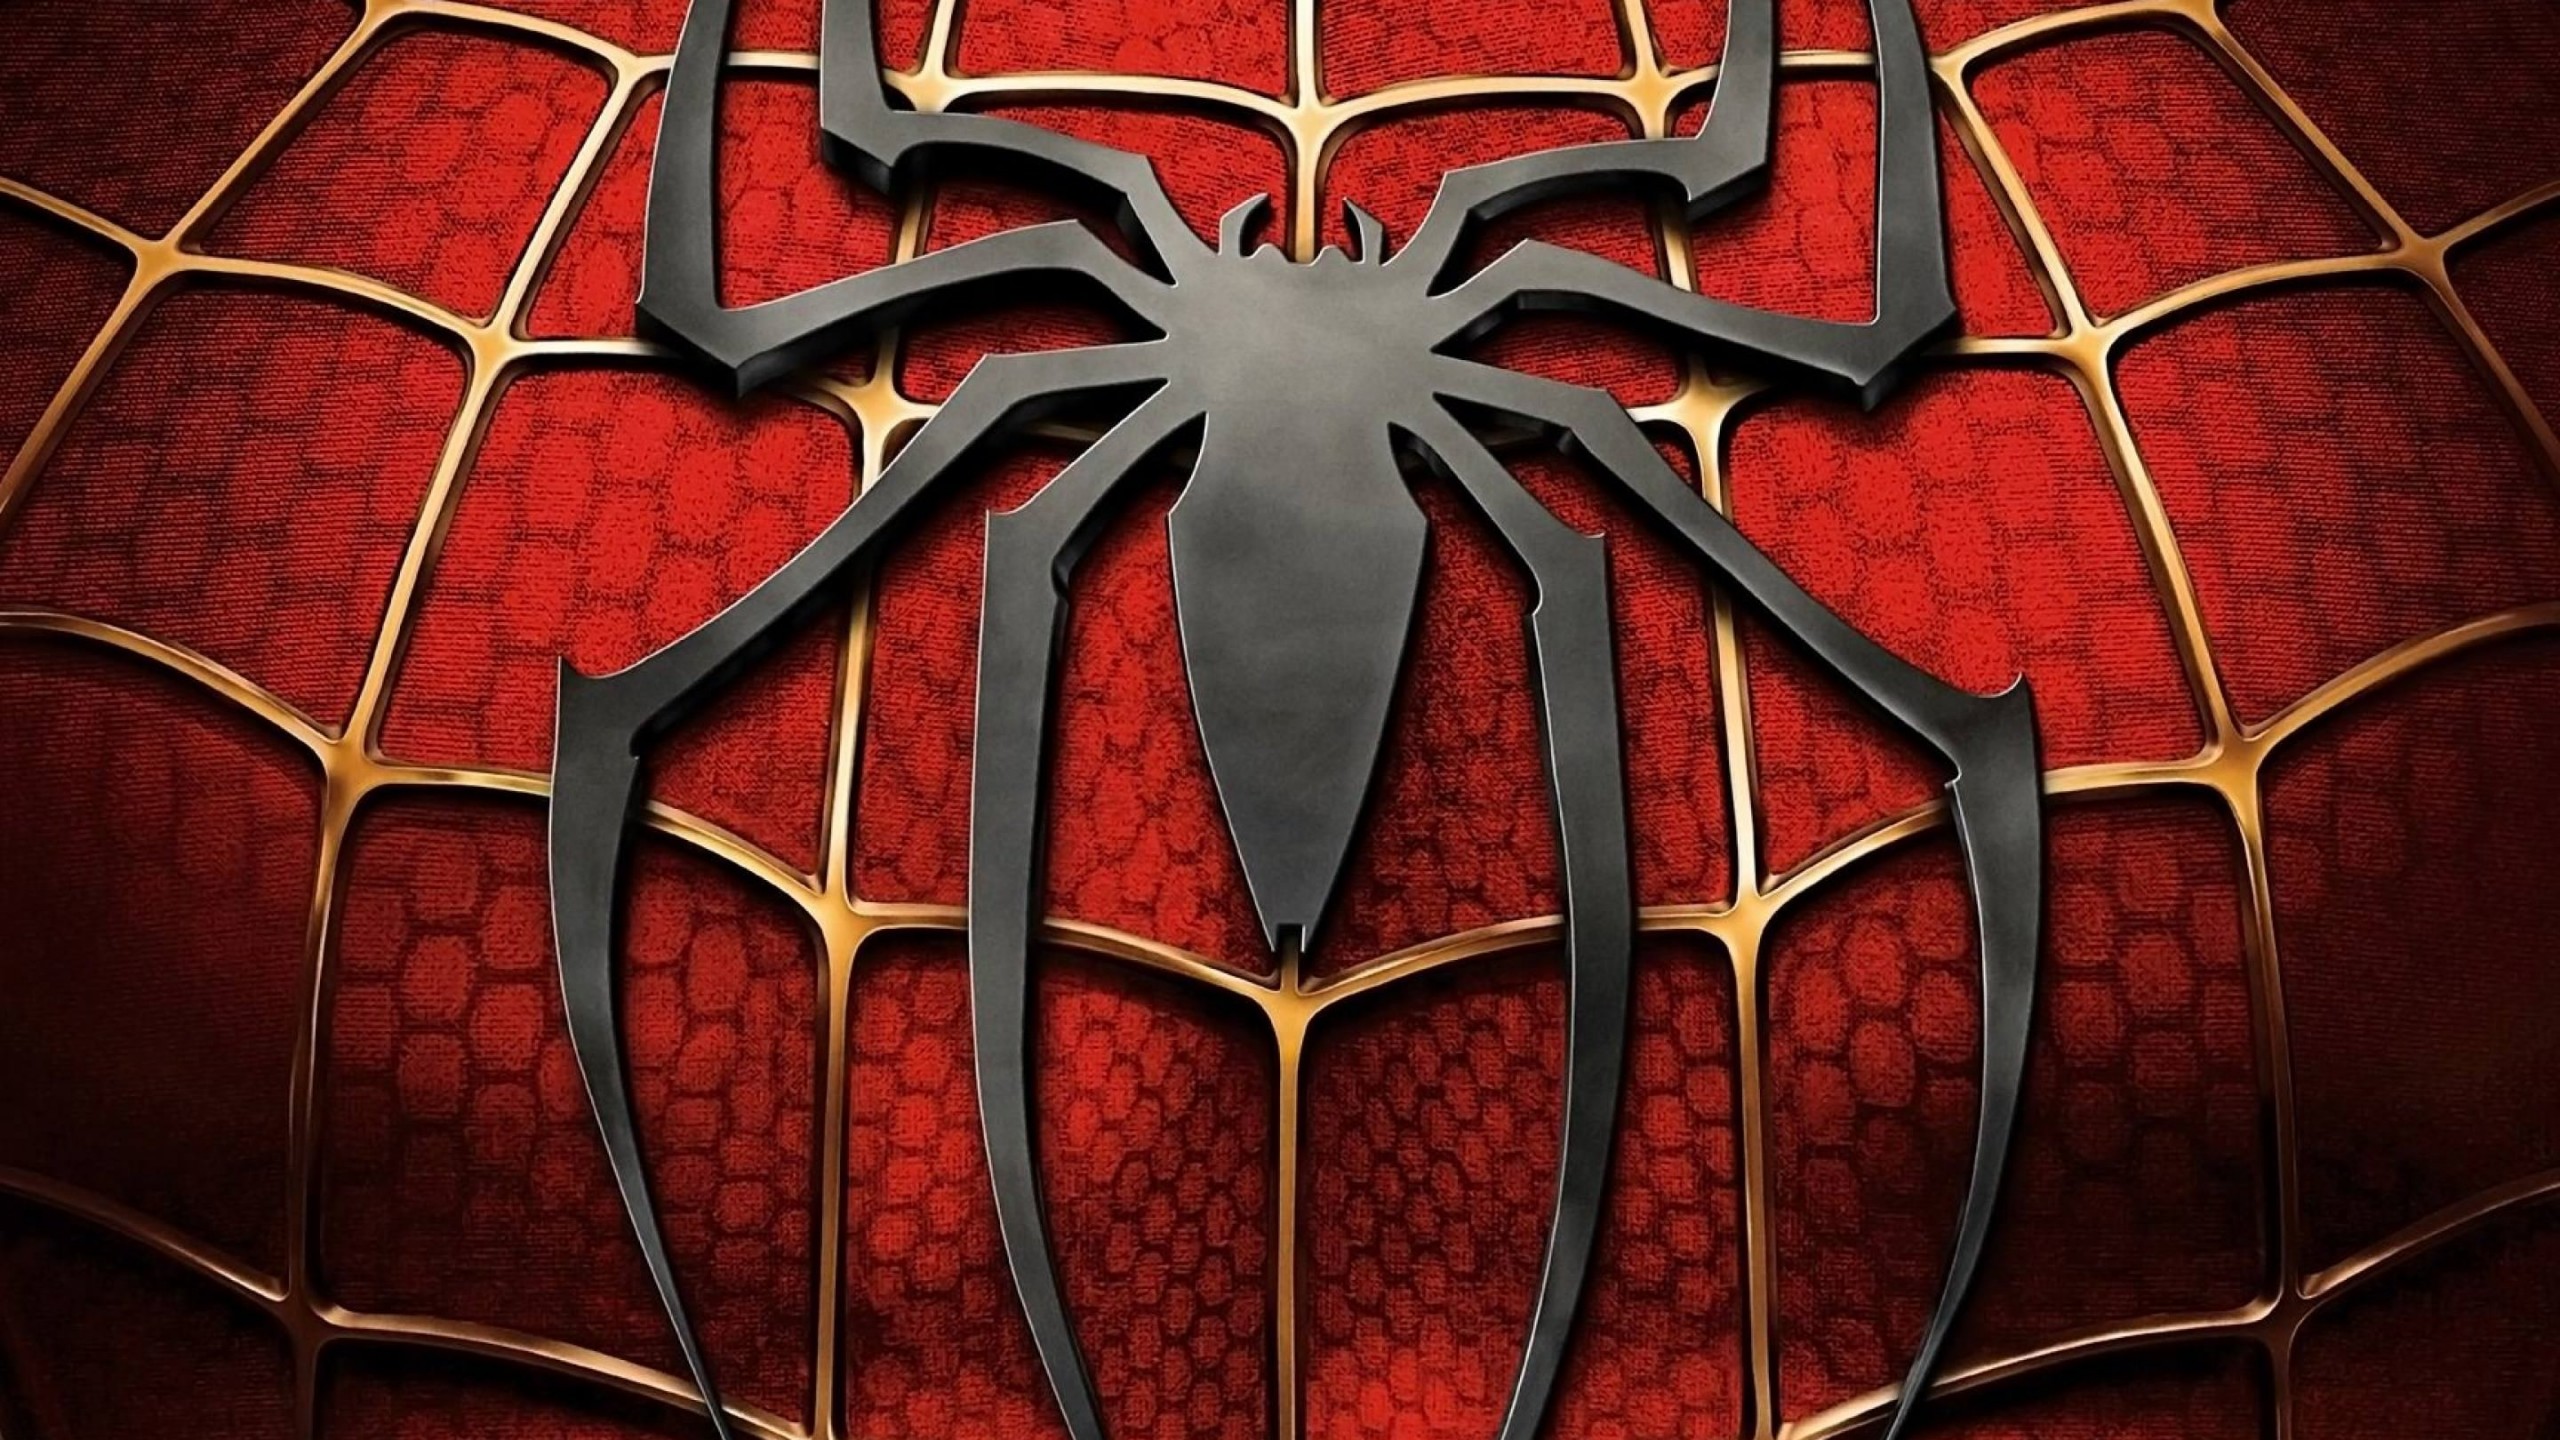 Spiderman Logo Wallpaper for Social Media YouTube Channel Art